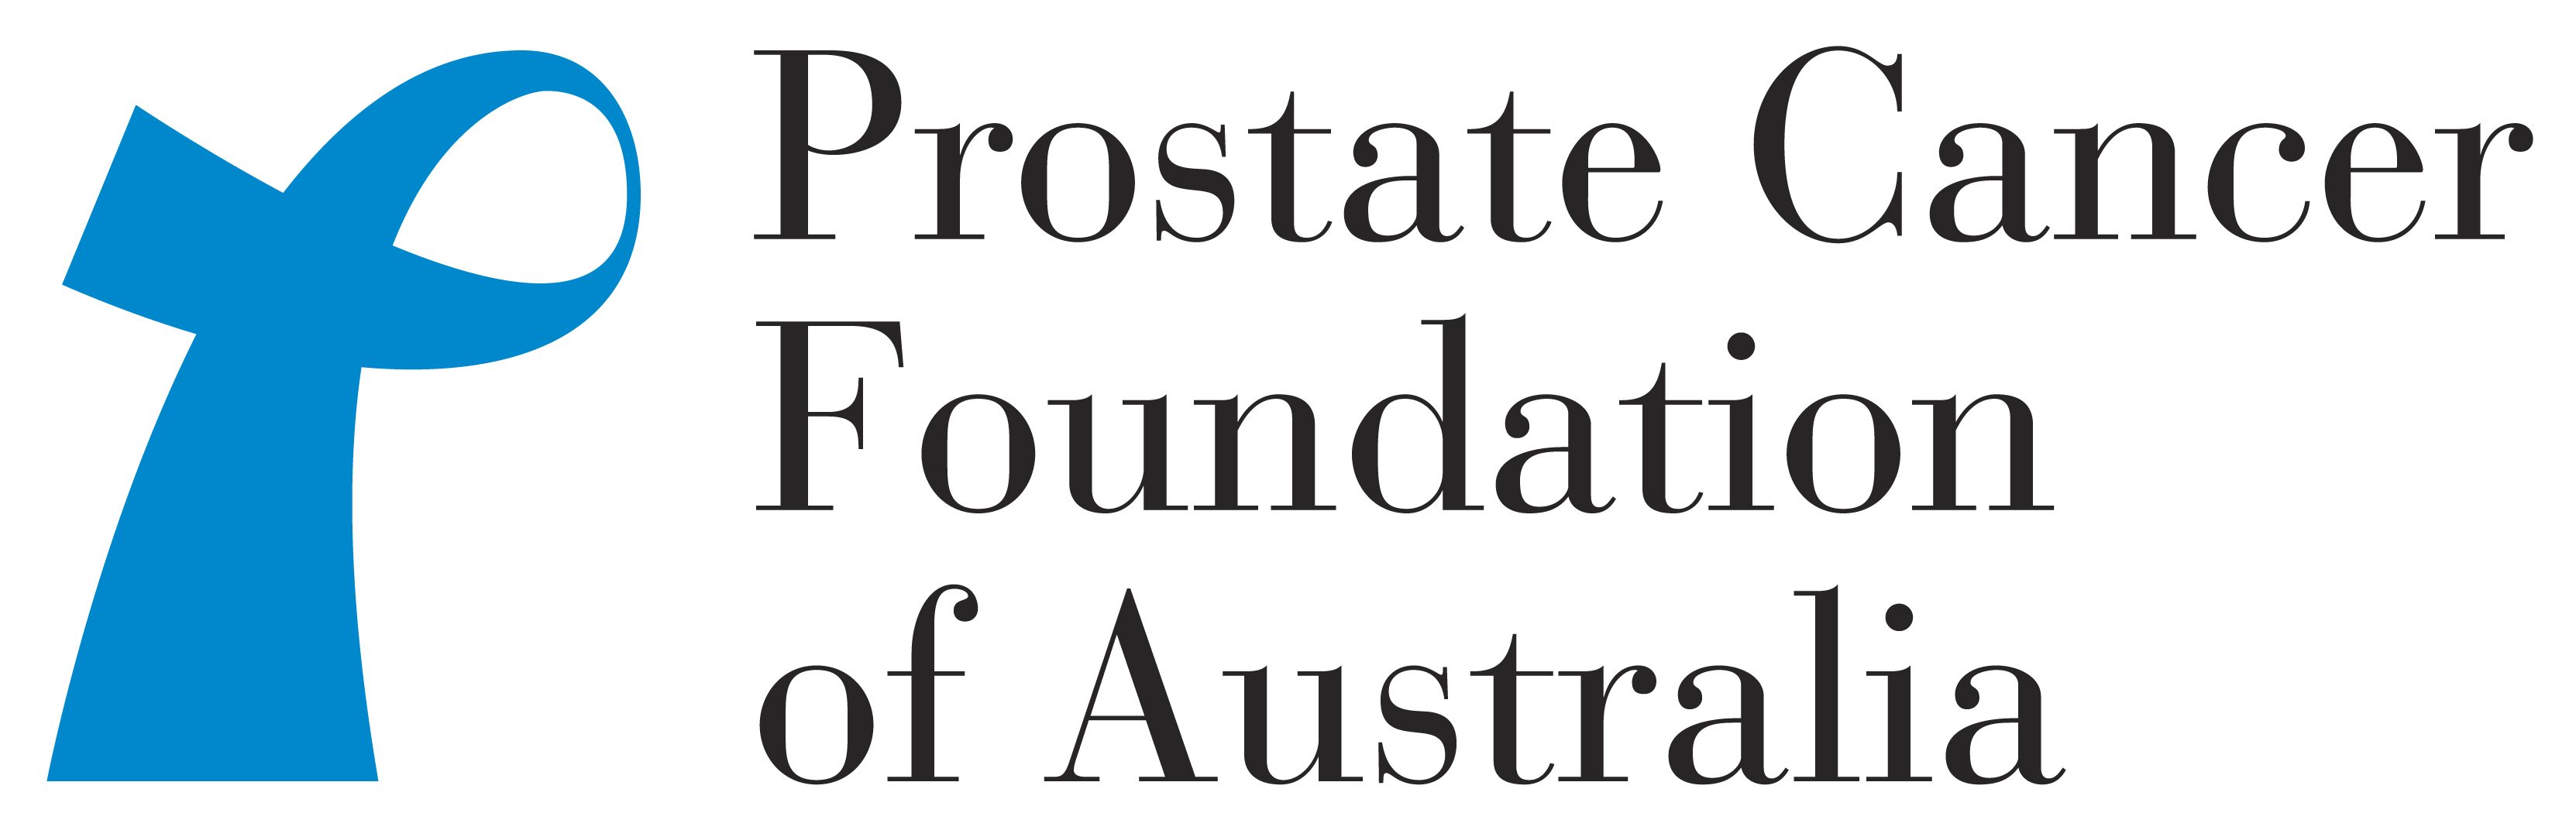 Prostate Cancer Foundation Logo photo - 1